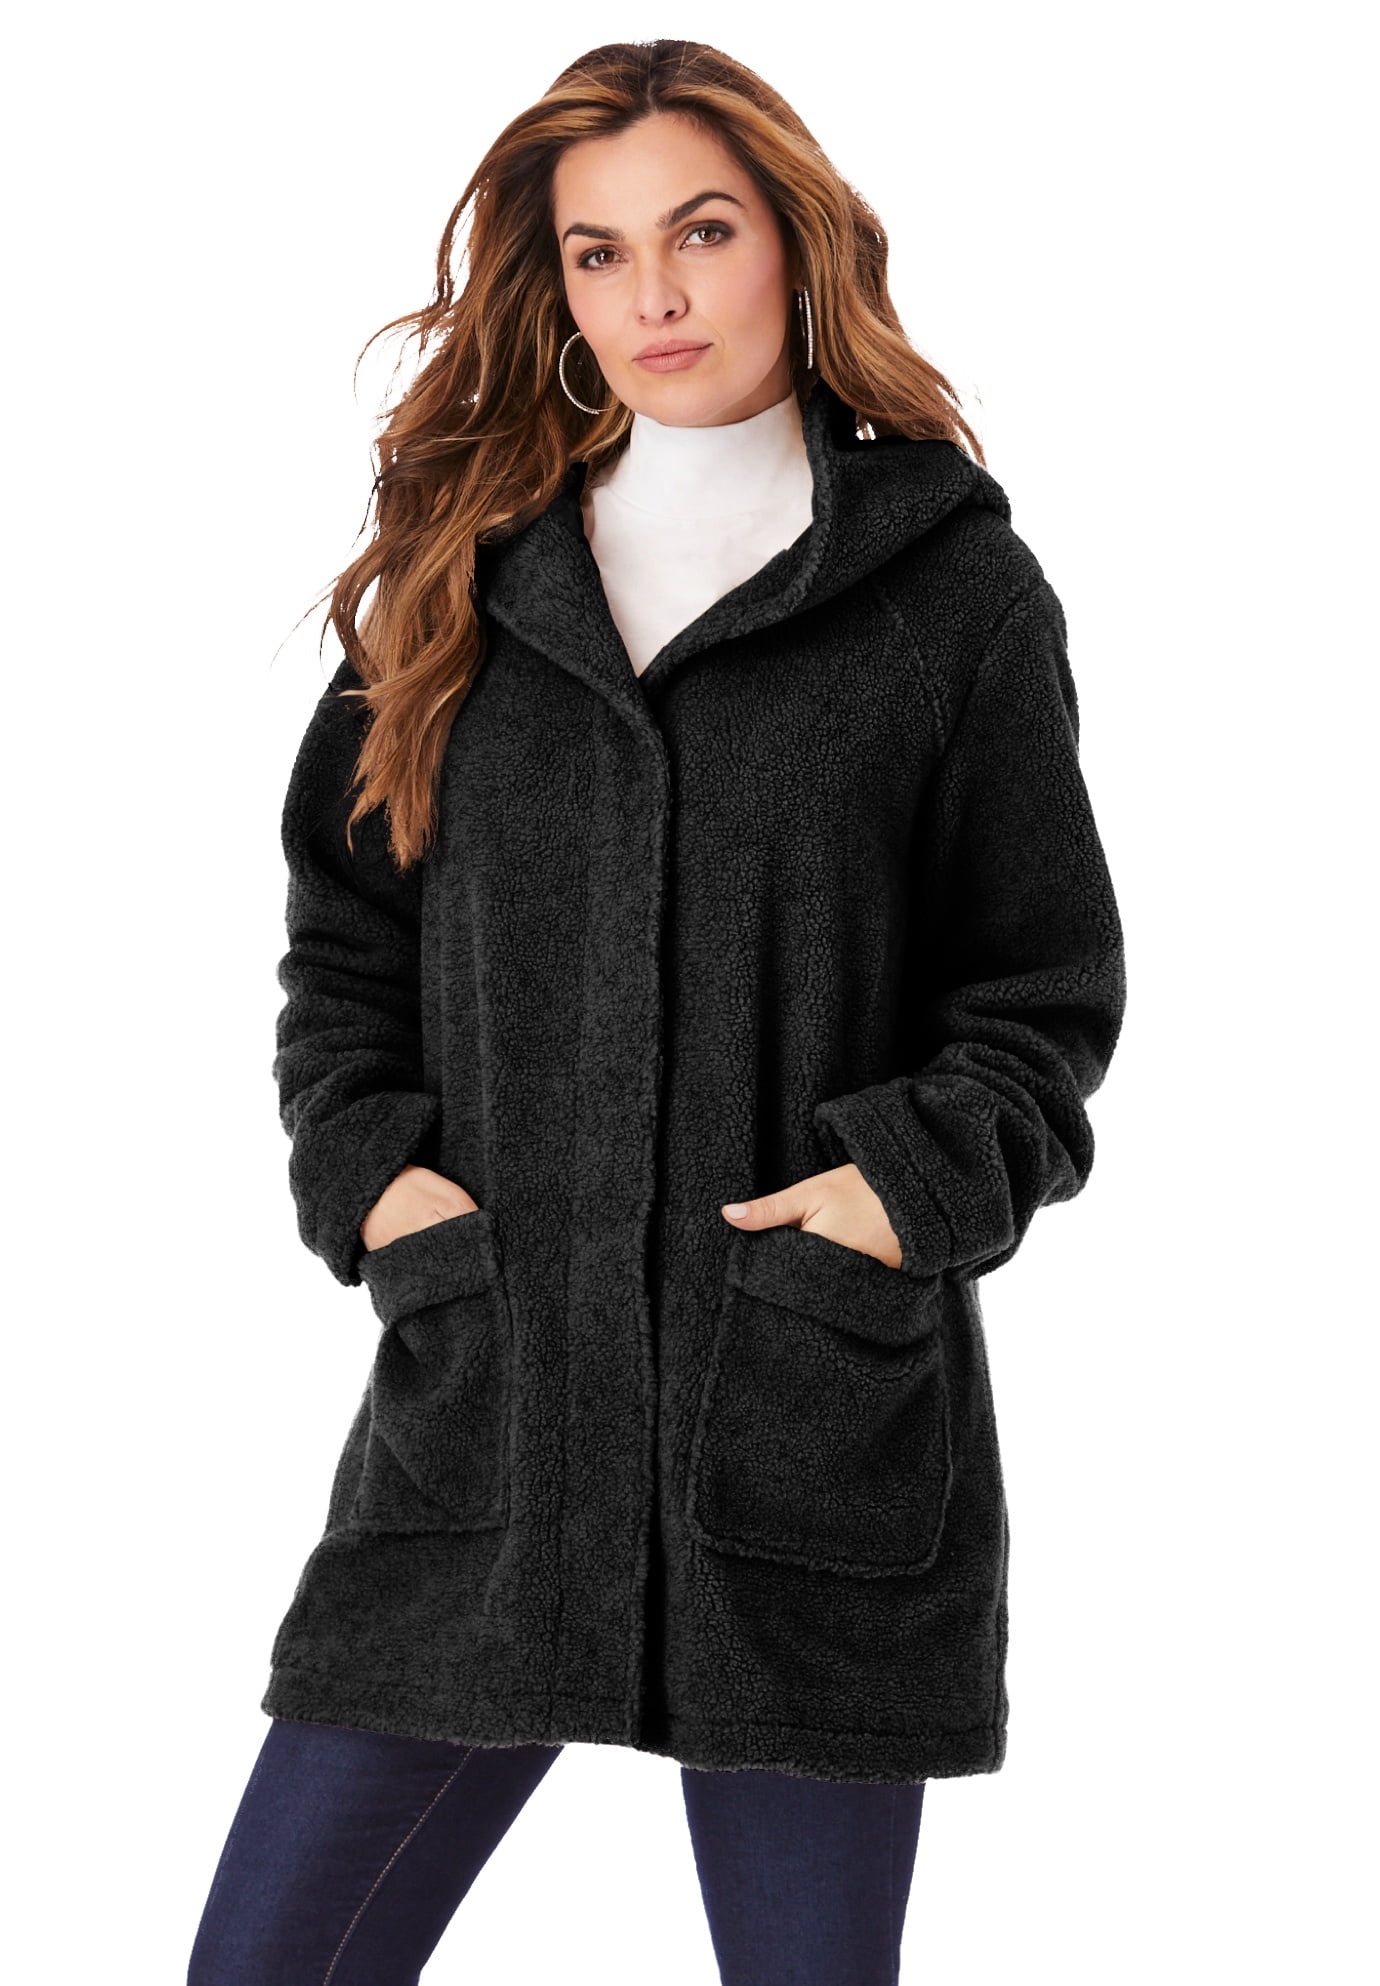 Roaman's - Roaman's Women's Plus Size Hooded Textured Fleece Coat Coat ...